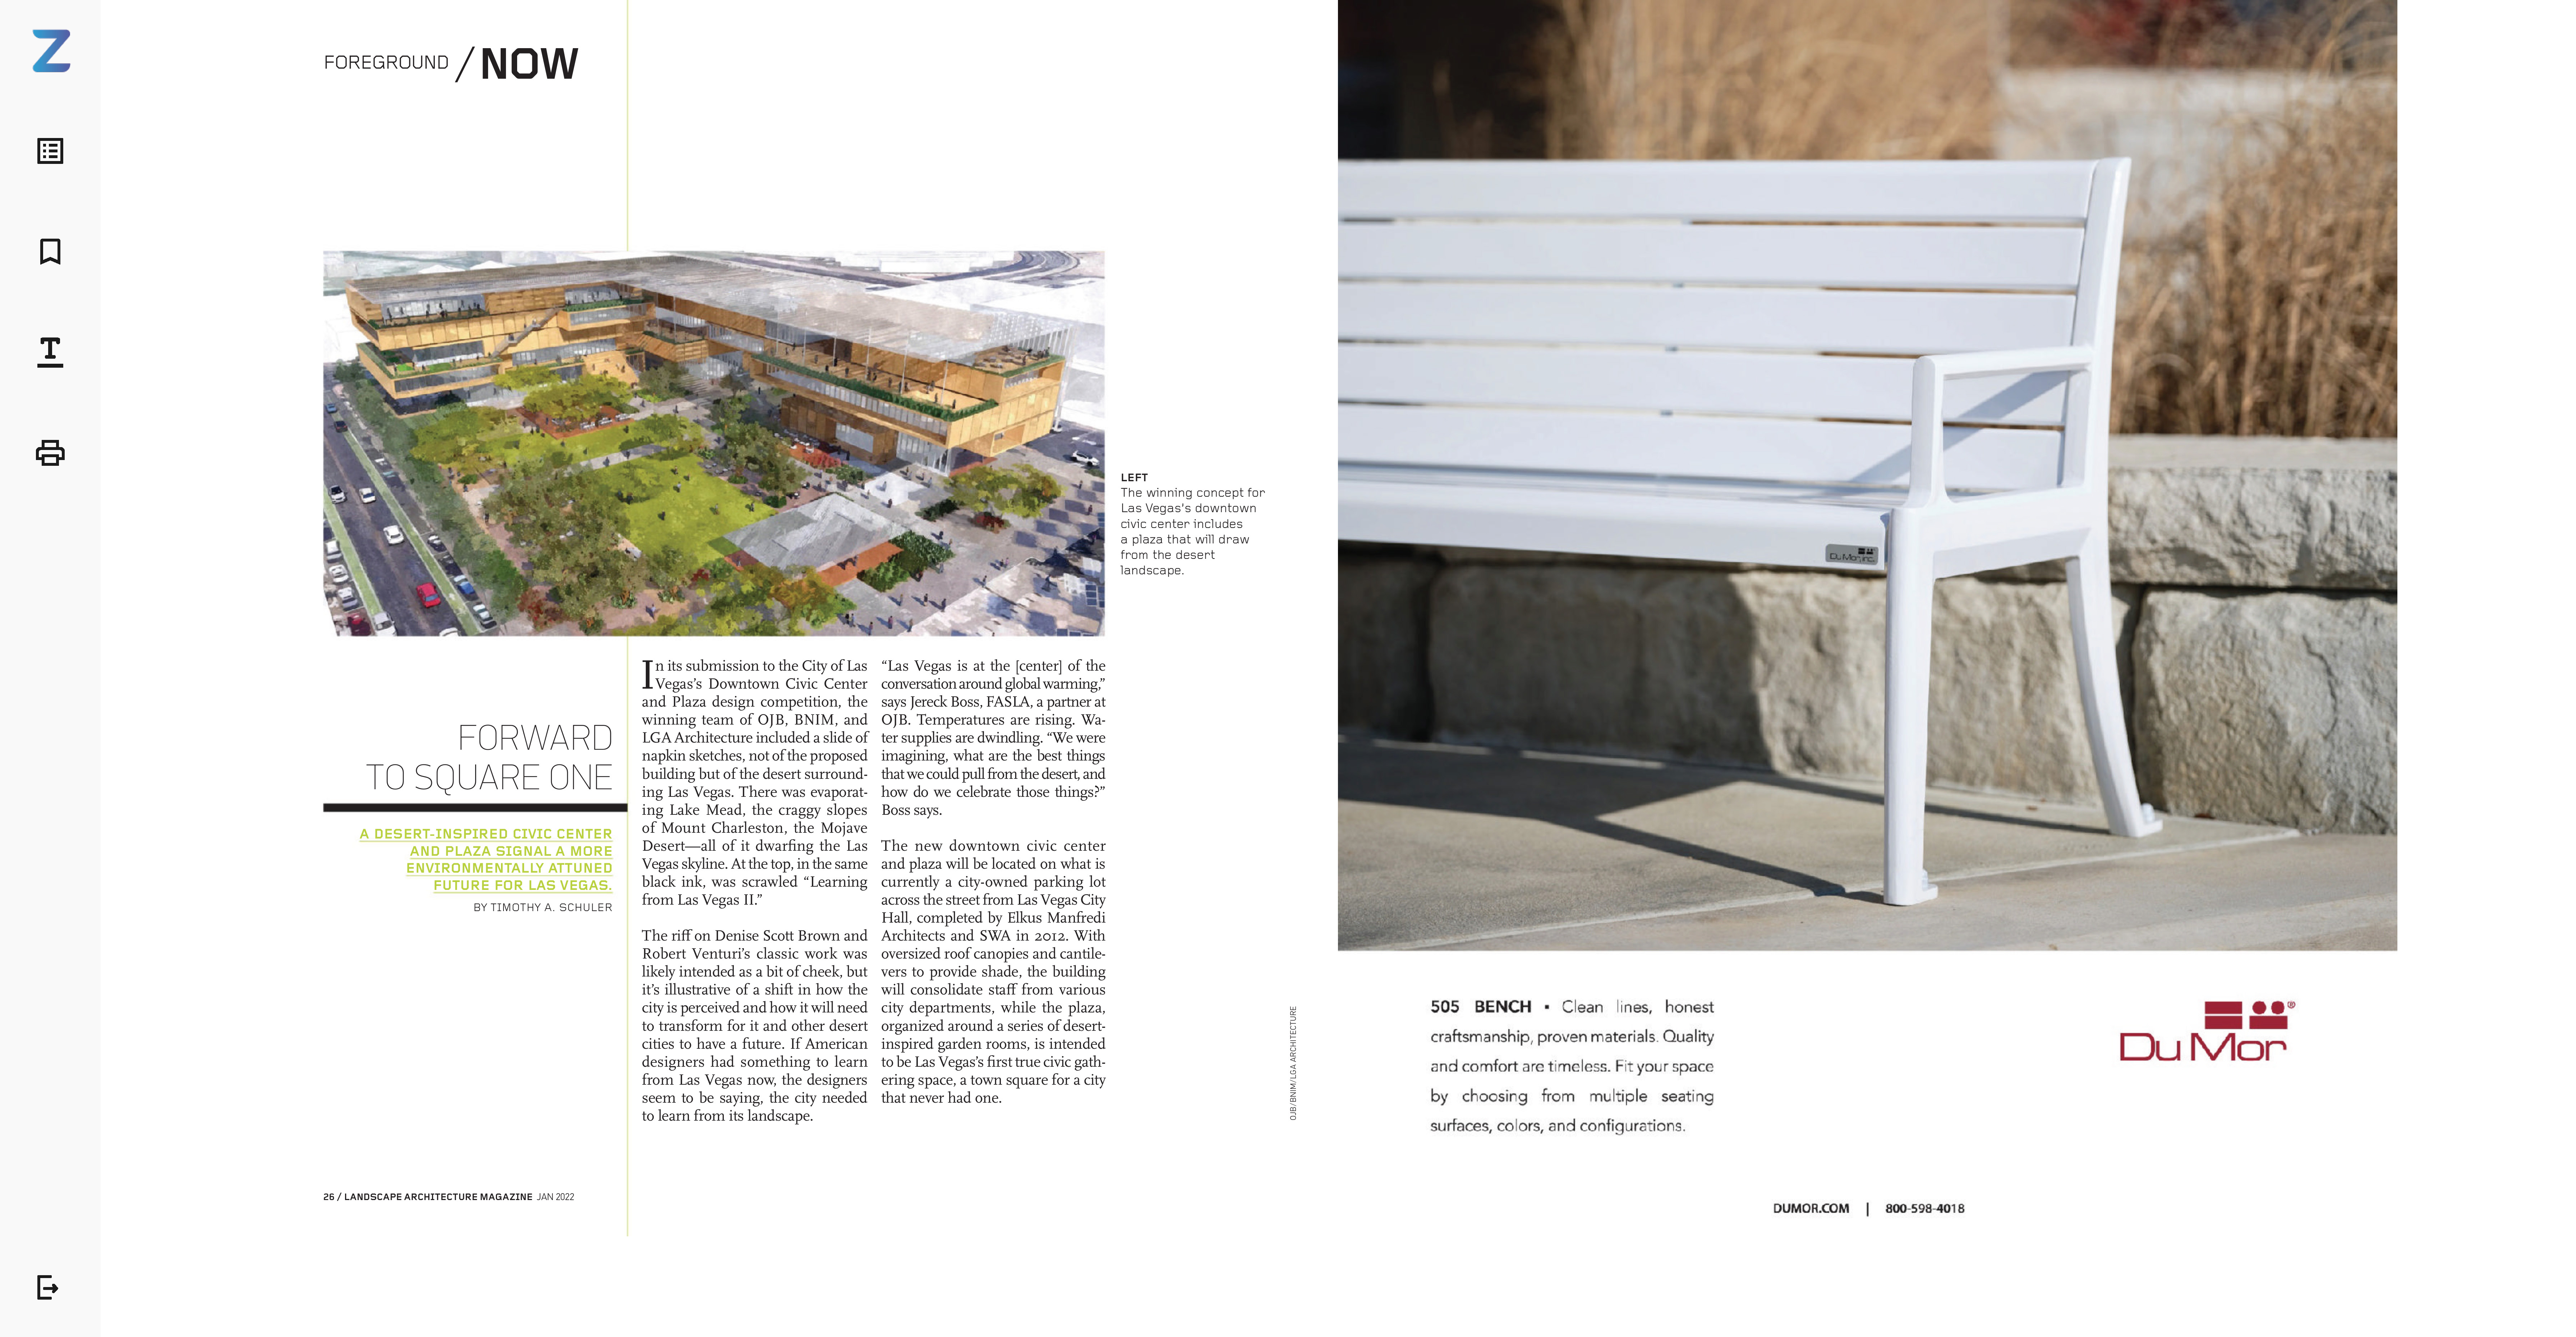 BNIM in Landscape Architecture Magazine